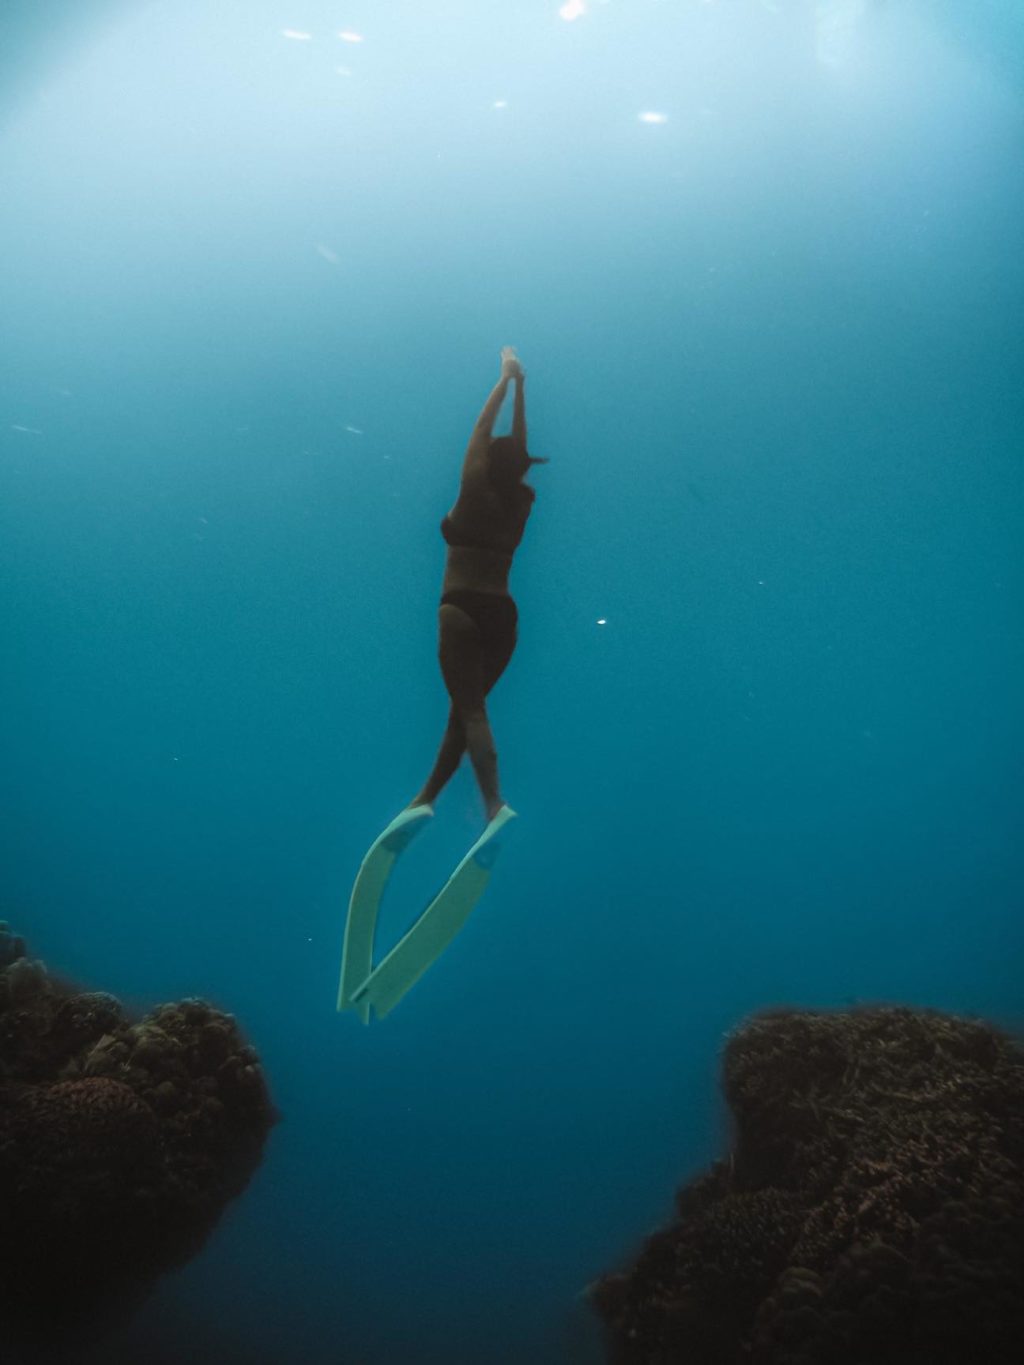 Siquijor: Underwater photos